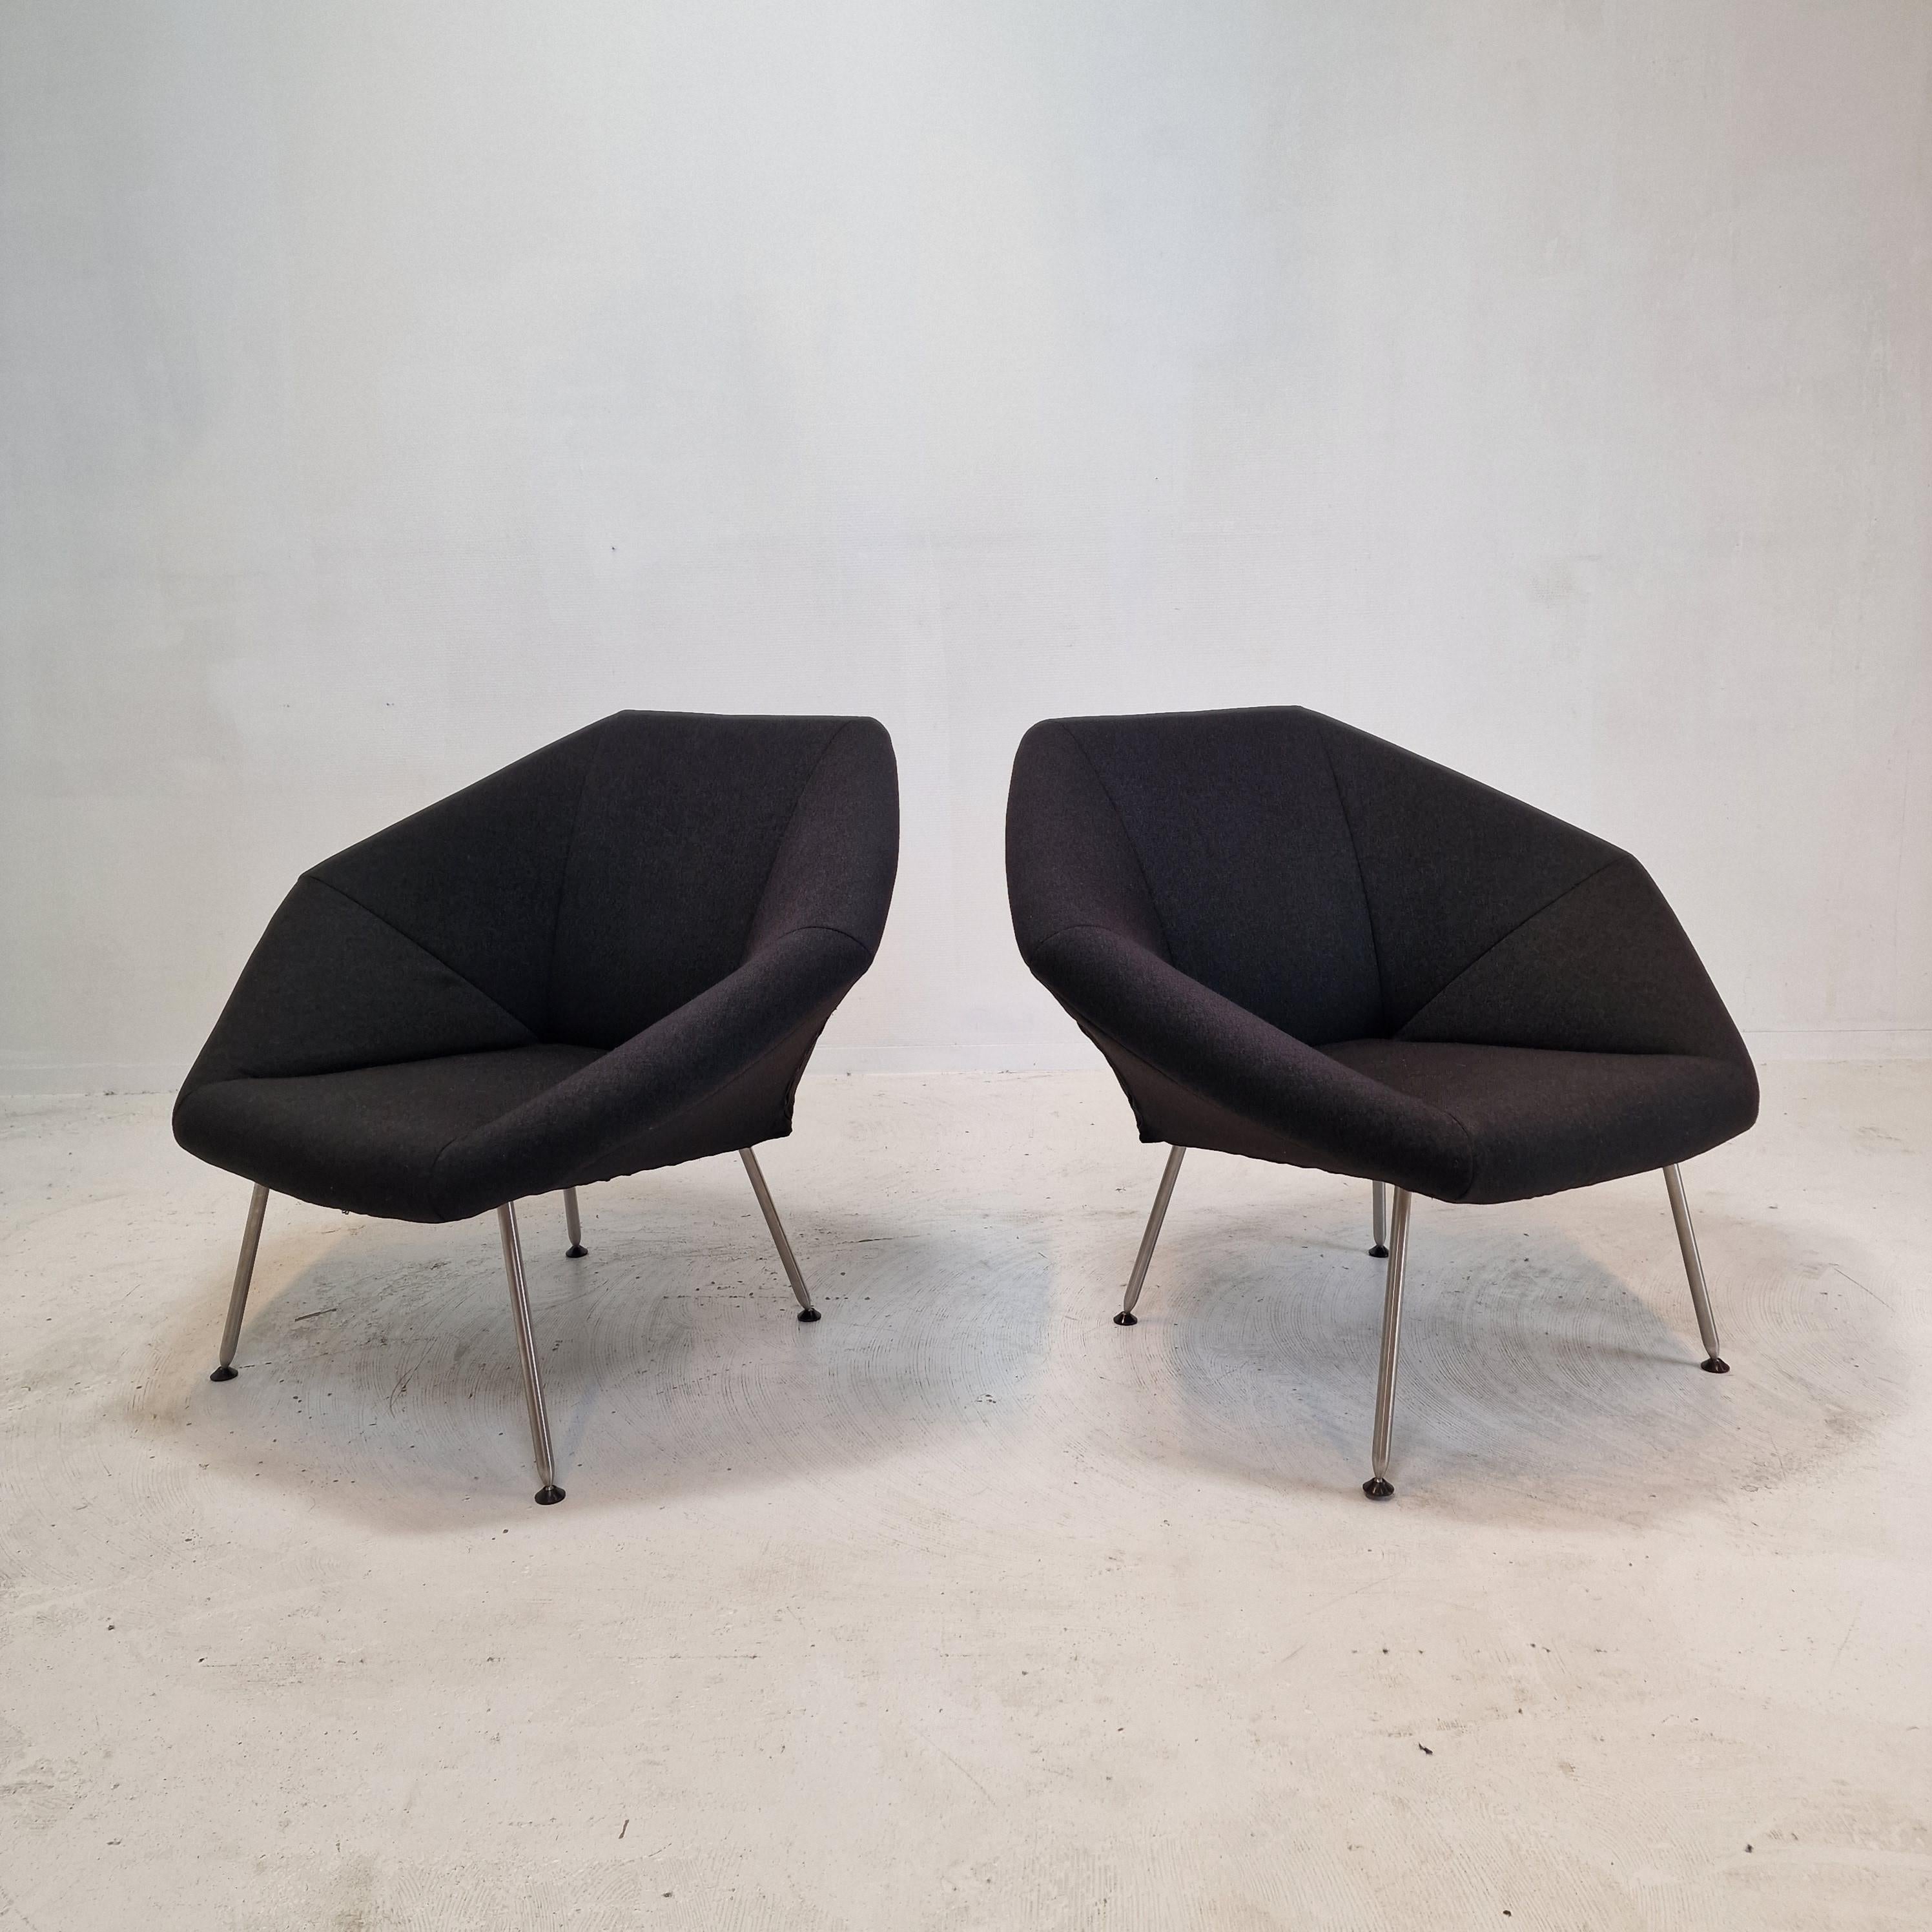 Charmant ensemble de 2 chaises de salon ou d'appoint, fabriqué aux Pays-Bas par Kaleidos.
Ces chaises confortables sont fabriquées dans les années 80.

Le tissu en laine noire est en très bon état.

Nous travaillons avec des emballeurs et des